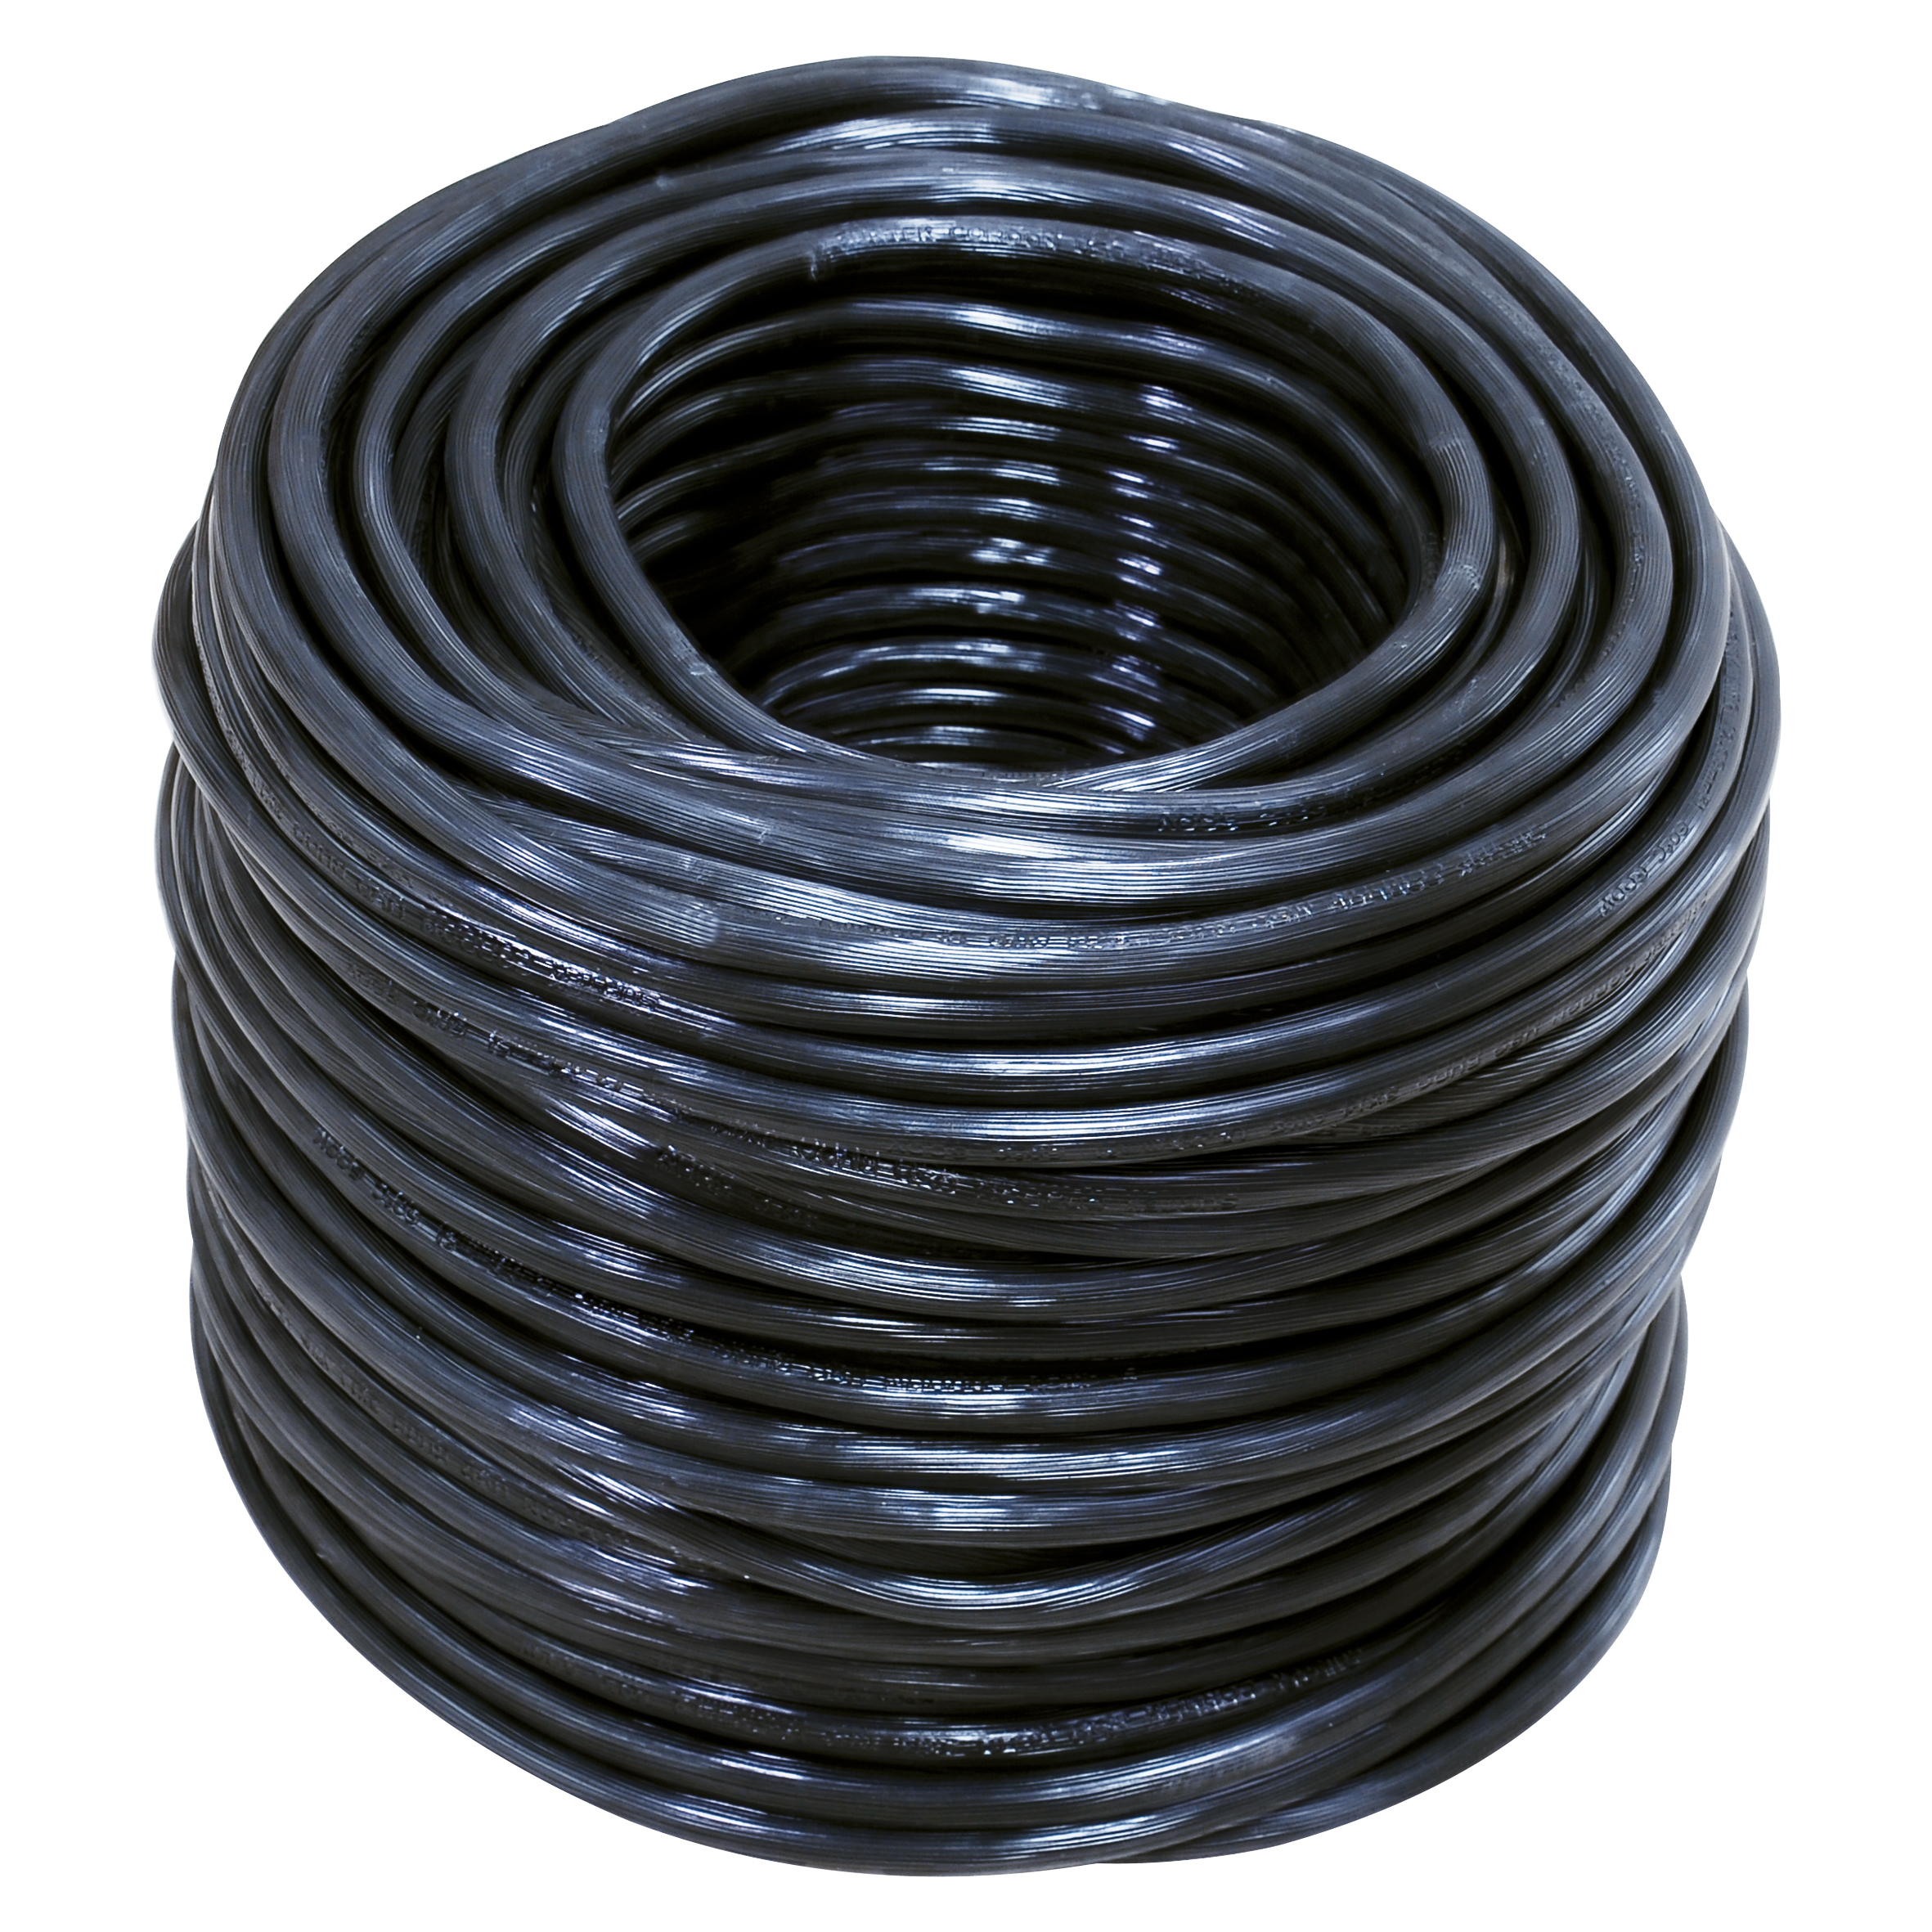 Cable eléctrico uso rudo Cal. 3 x 14 100m blanco y negro